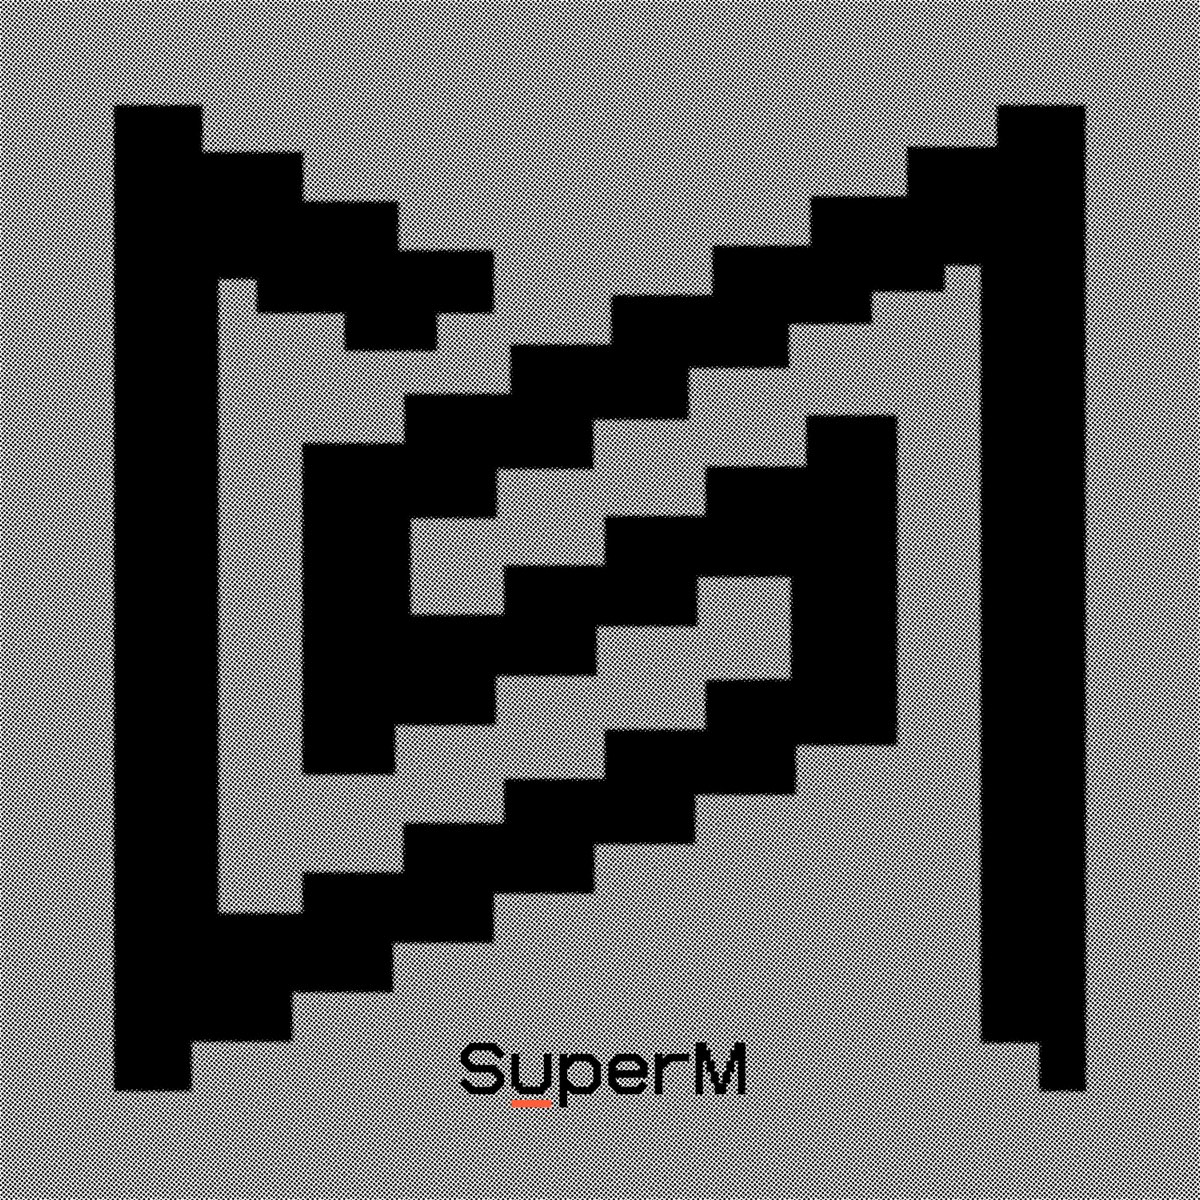 SuperM — Infinity cover artwork